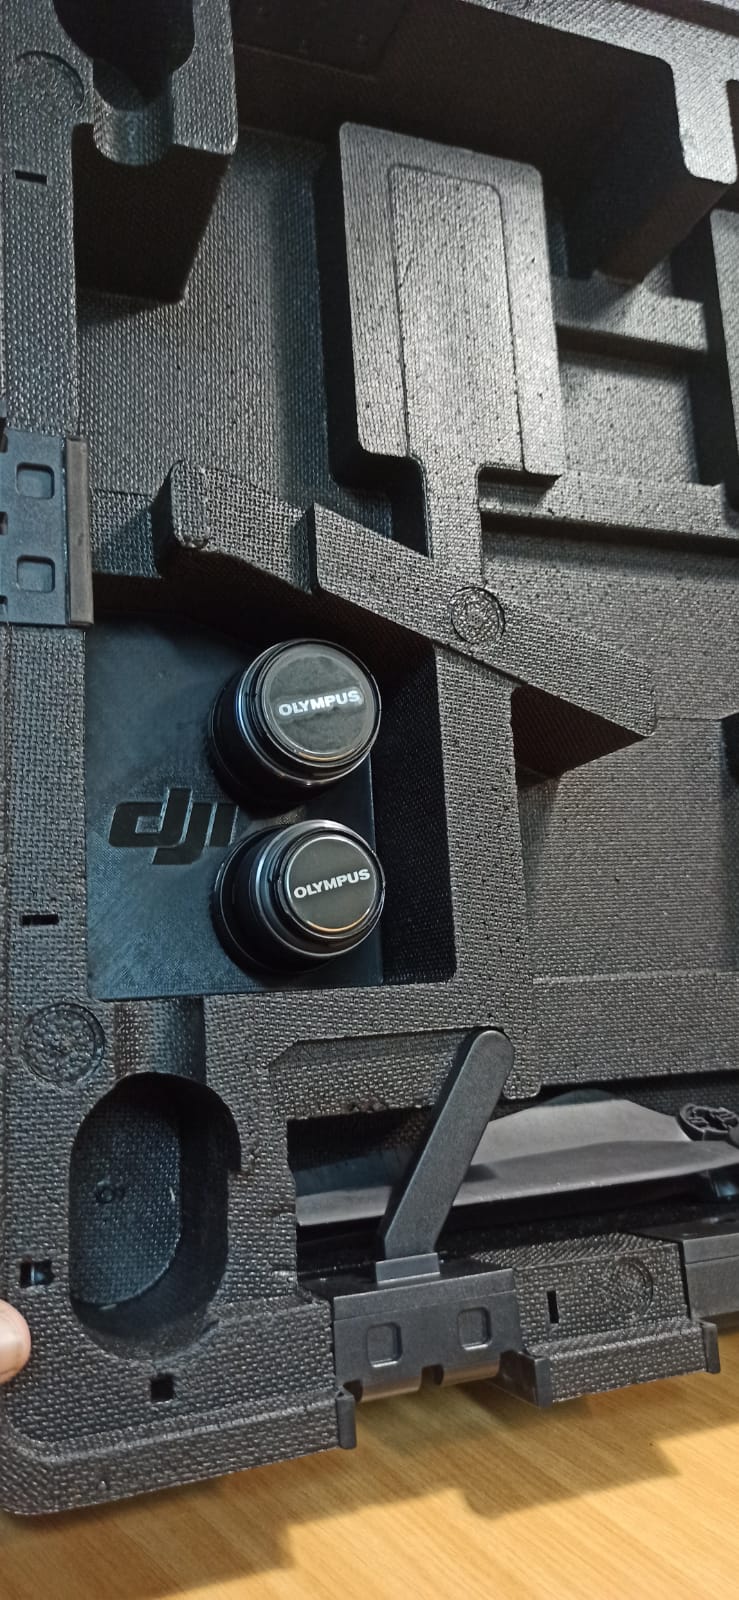 DJI INSPIRE 2 case Olympus lens holder